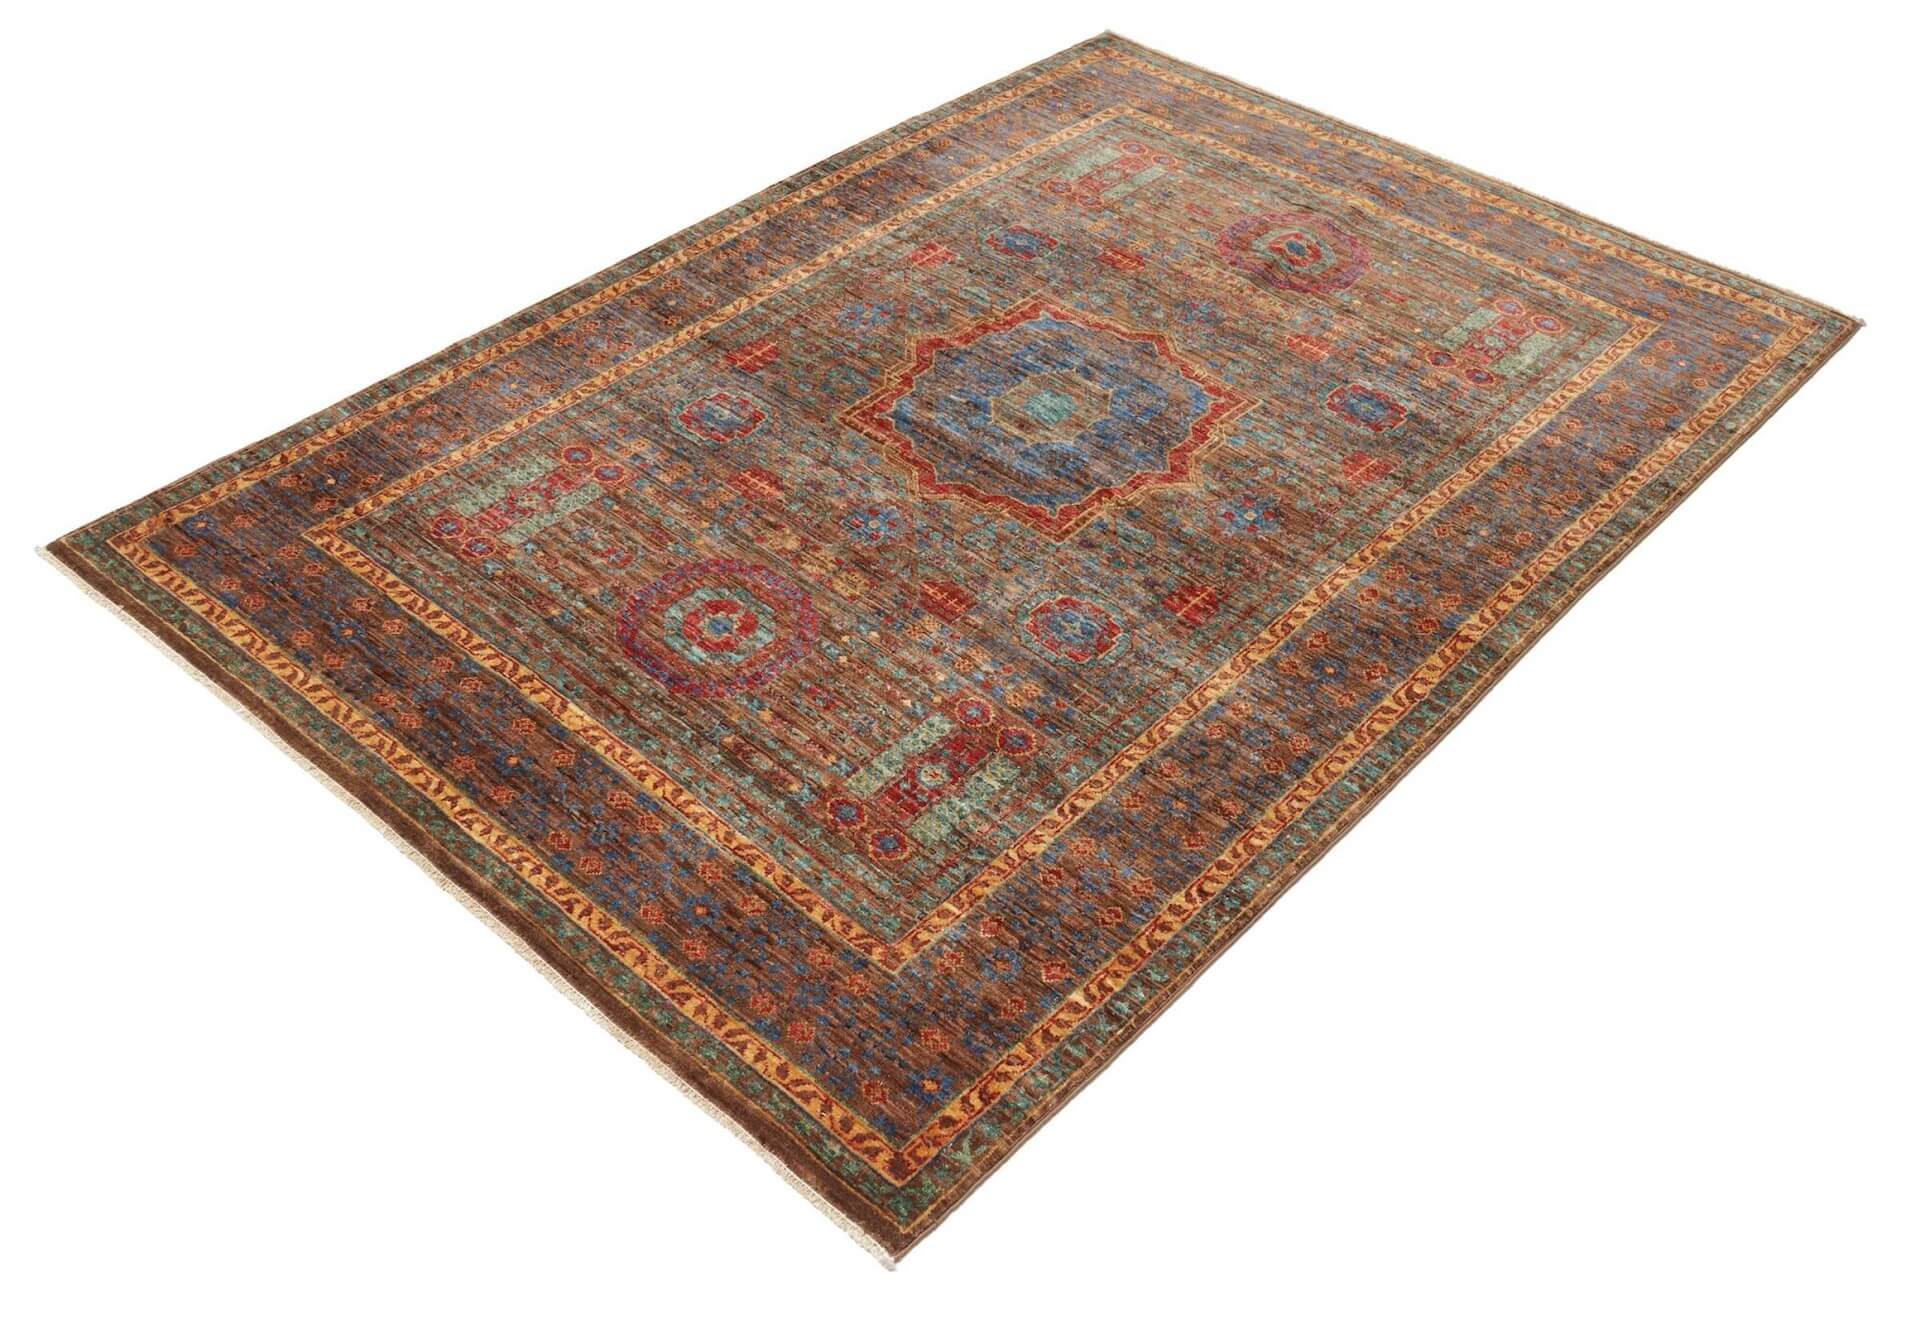 Afghanischer Teppich Mamlouk, handversponnene Schurwolle, braun, mehrfarbig, mit Mittelmedaillon, 124 x 178 cm, Schrägansicht